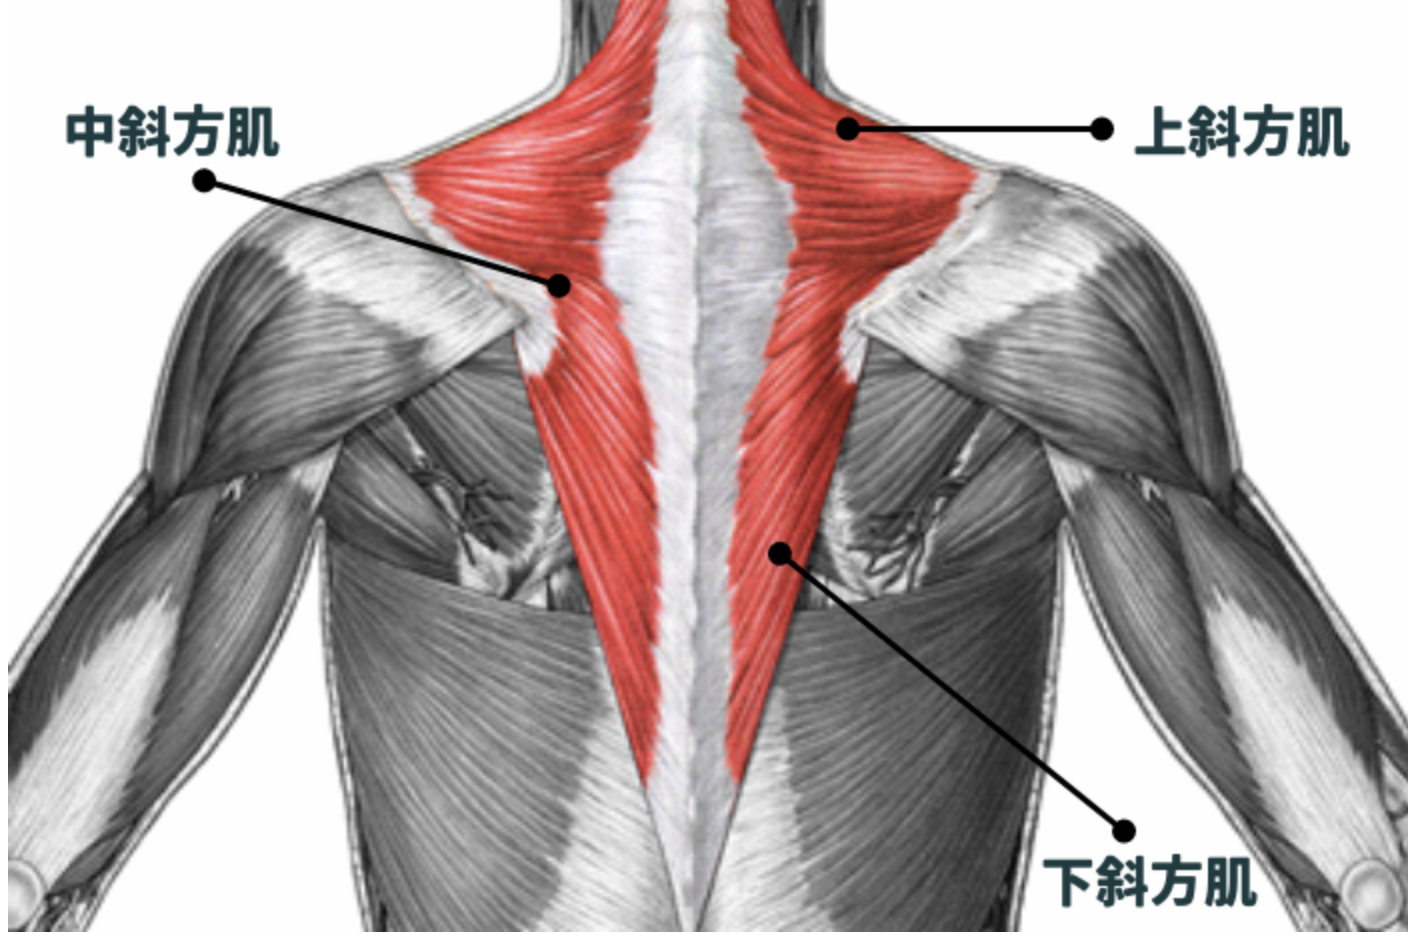 4招斜方肌放鬆訓練 3c人必學 改善緊繃 消除圓肩